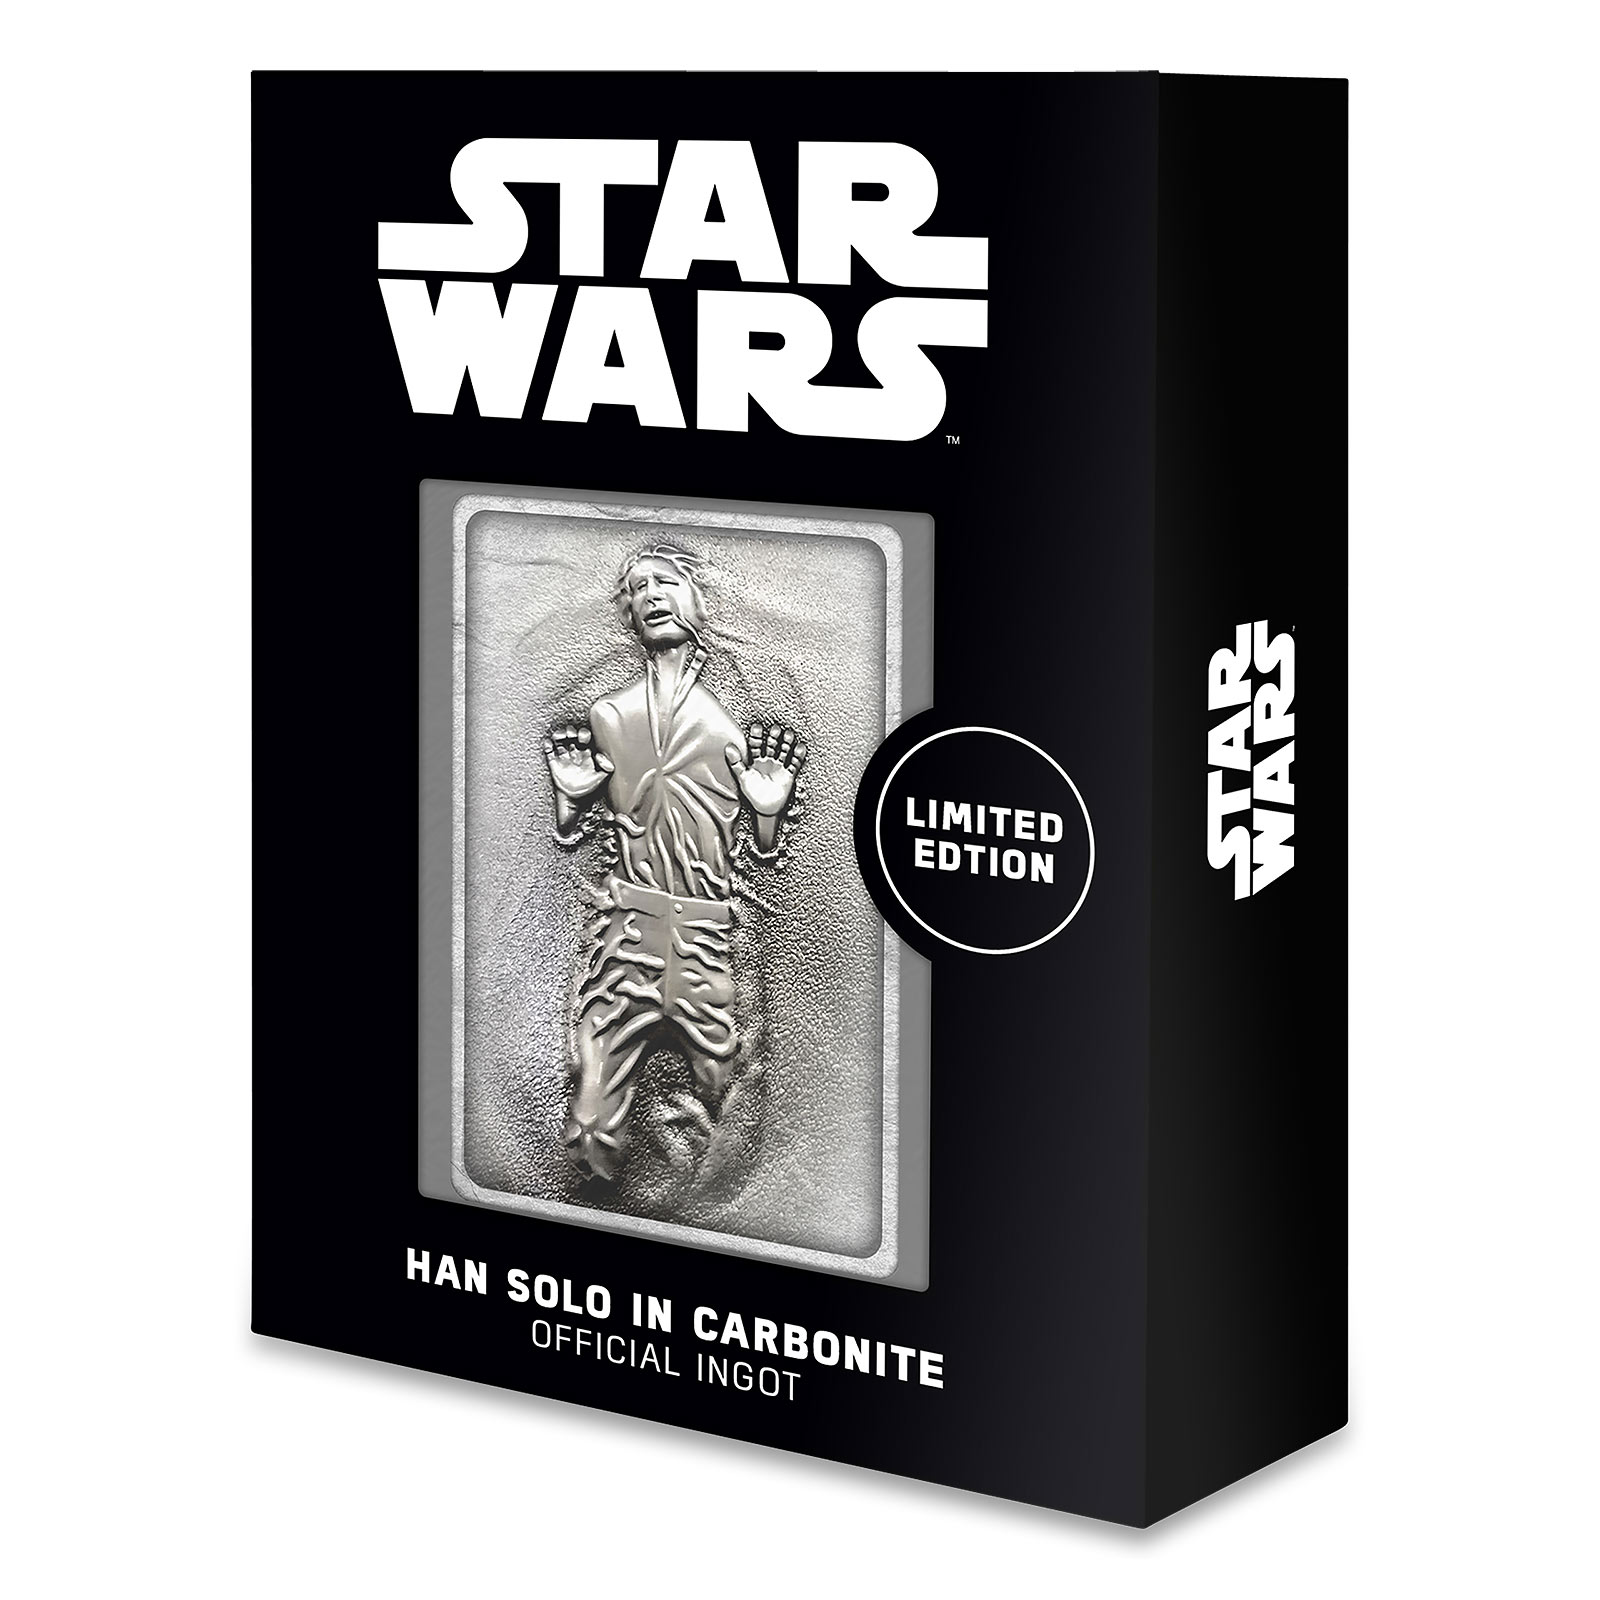 Star Wars - Han Solo in Carbonite Miniature Collector's Replica